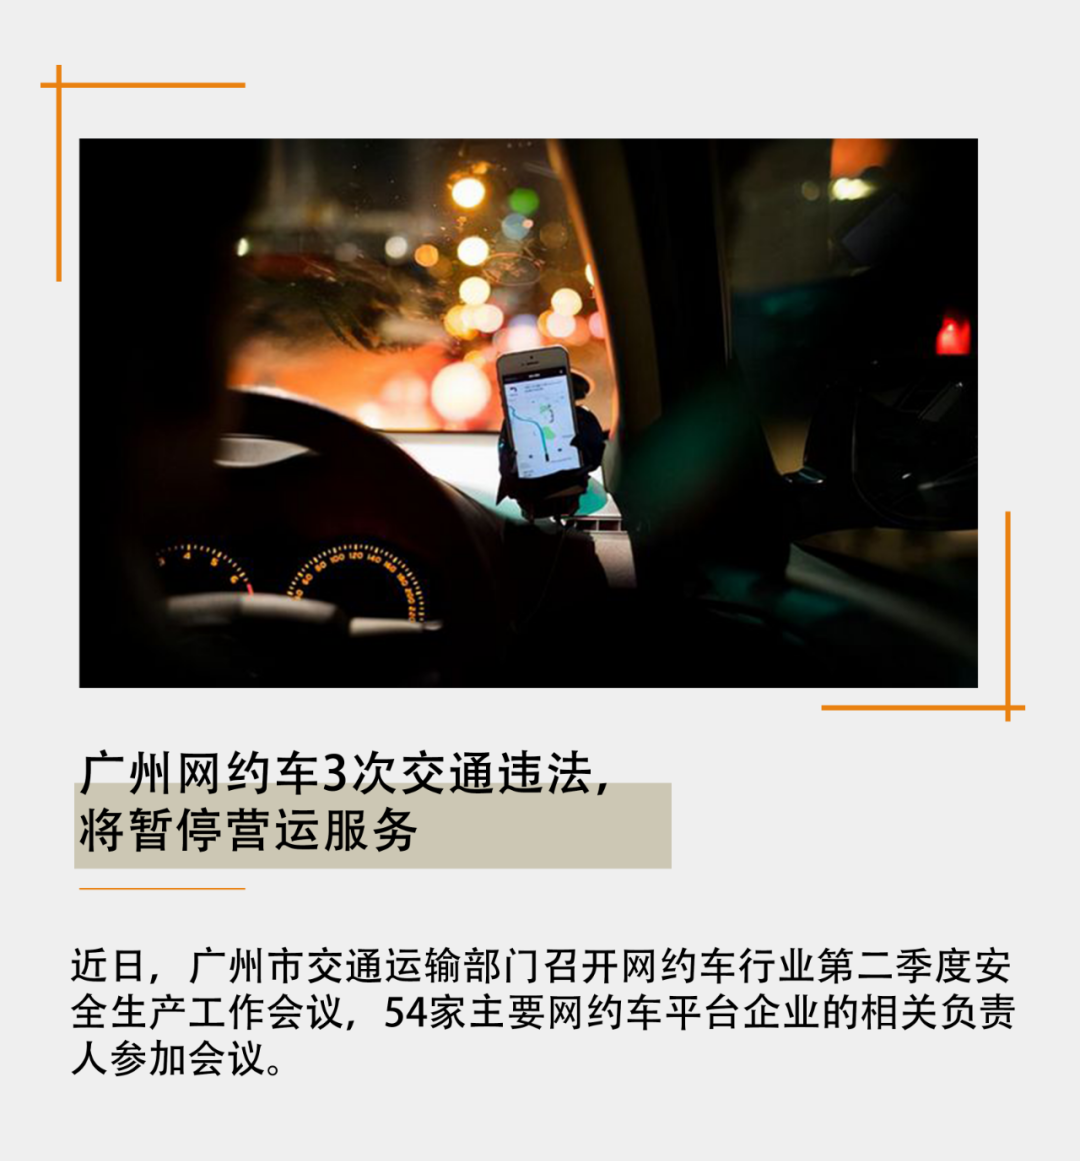 广州要求网约车平台严格规范经营行为，网约车3次交通违法，将暂停营运服务